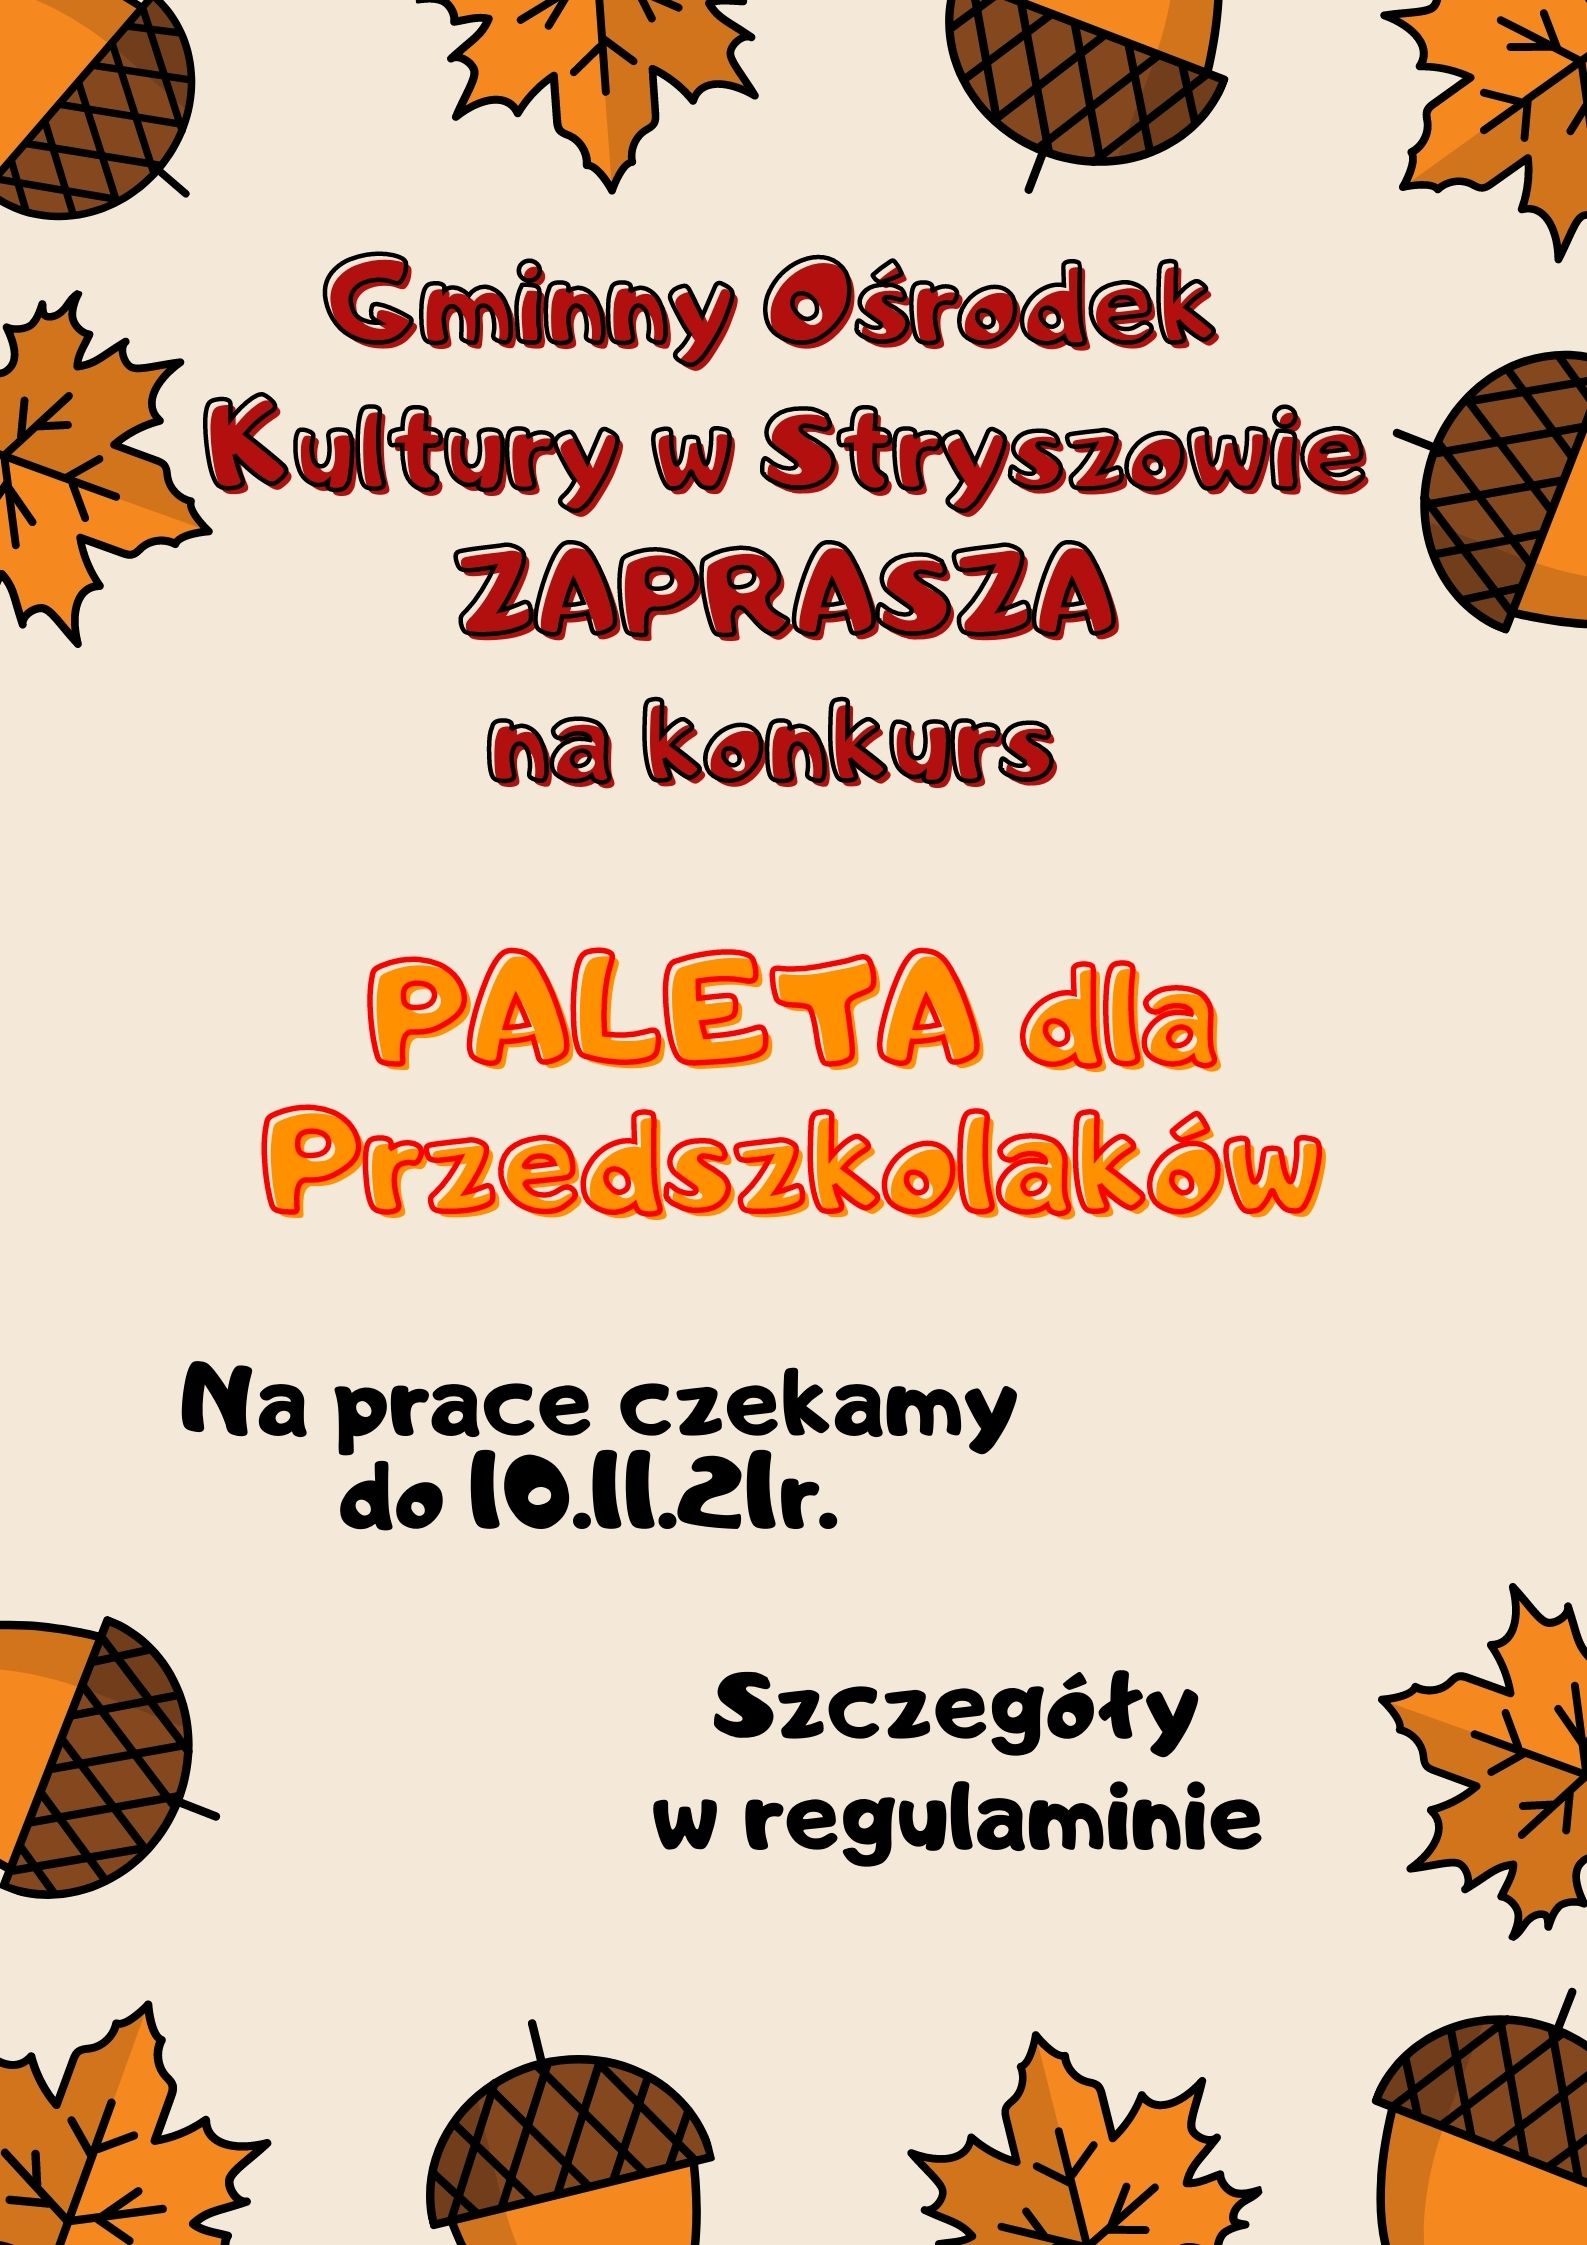 Plakat informujący o konkursie "paleta dla przedszkolaka"